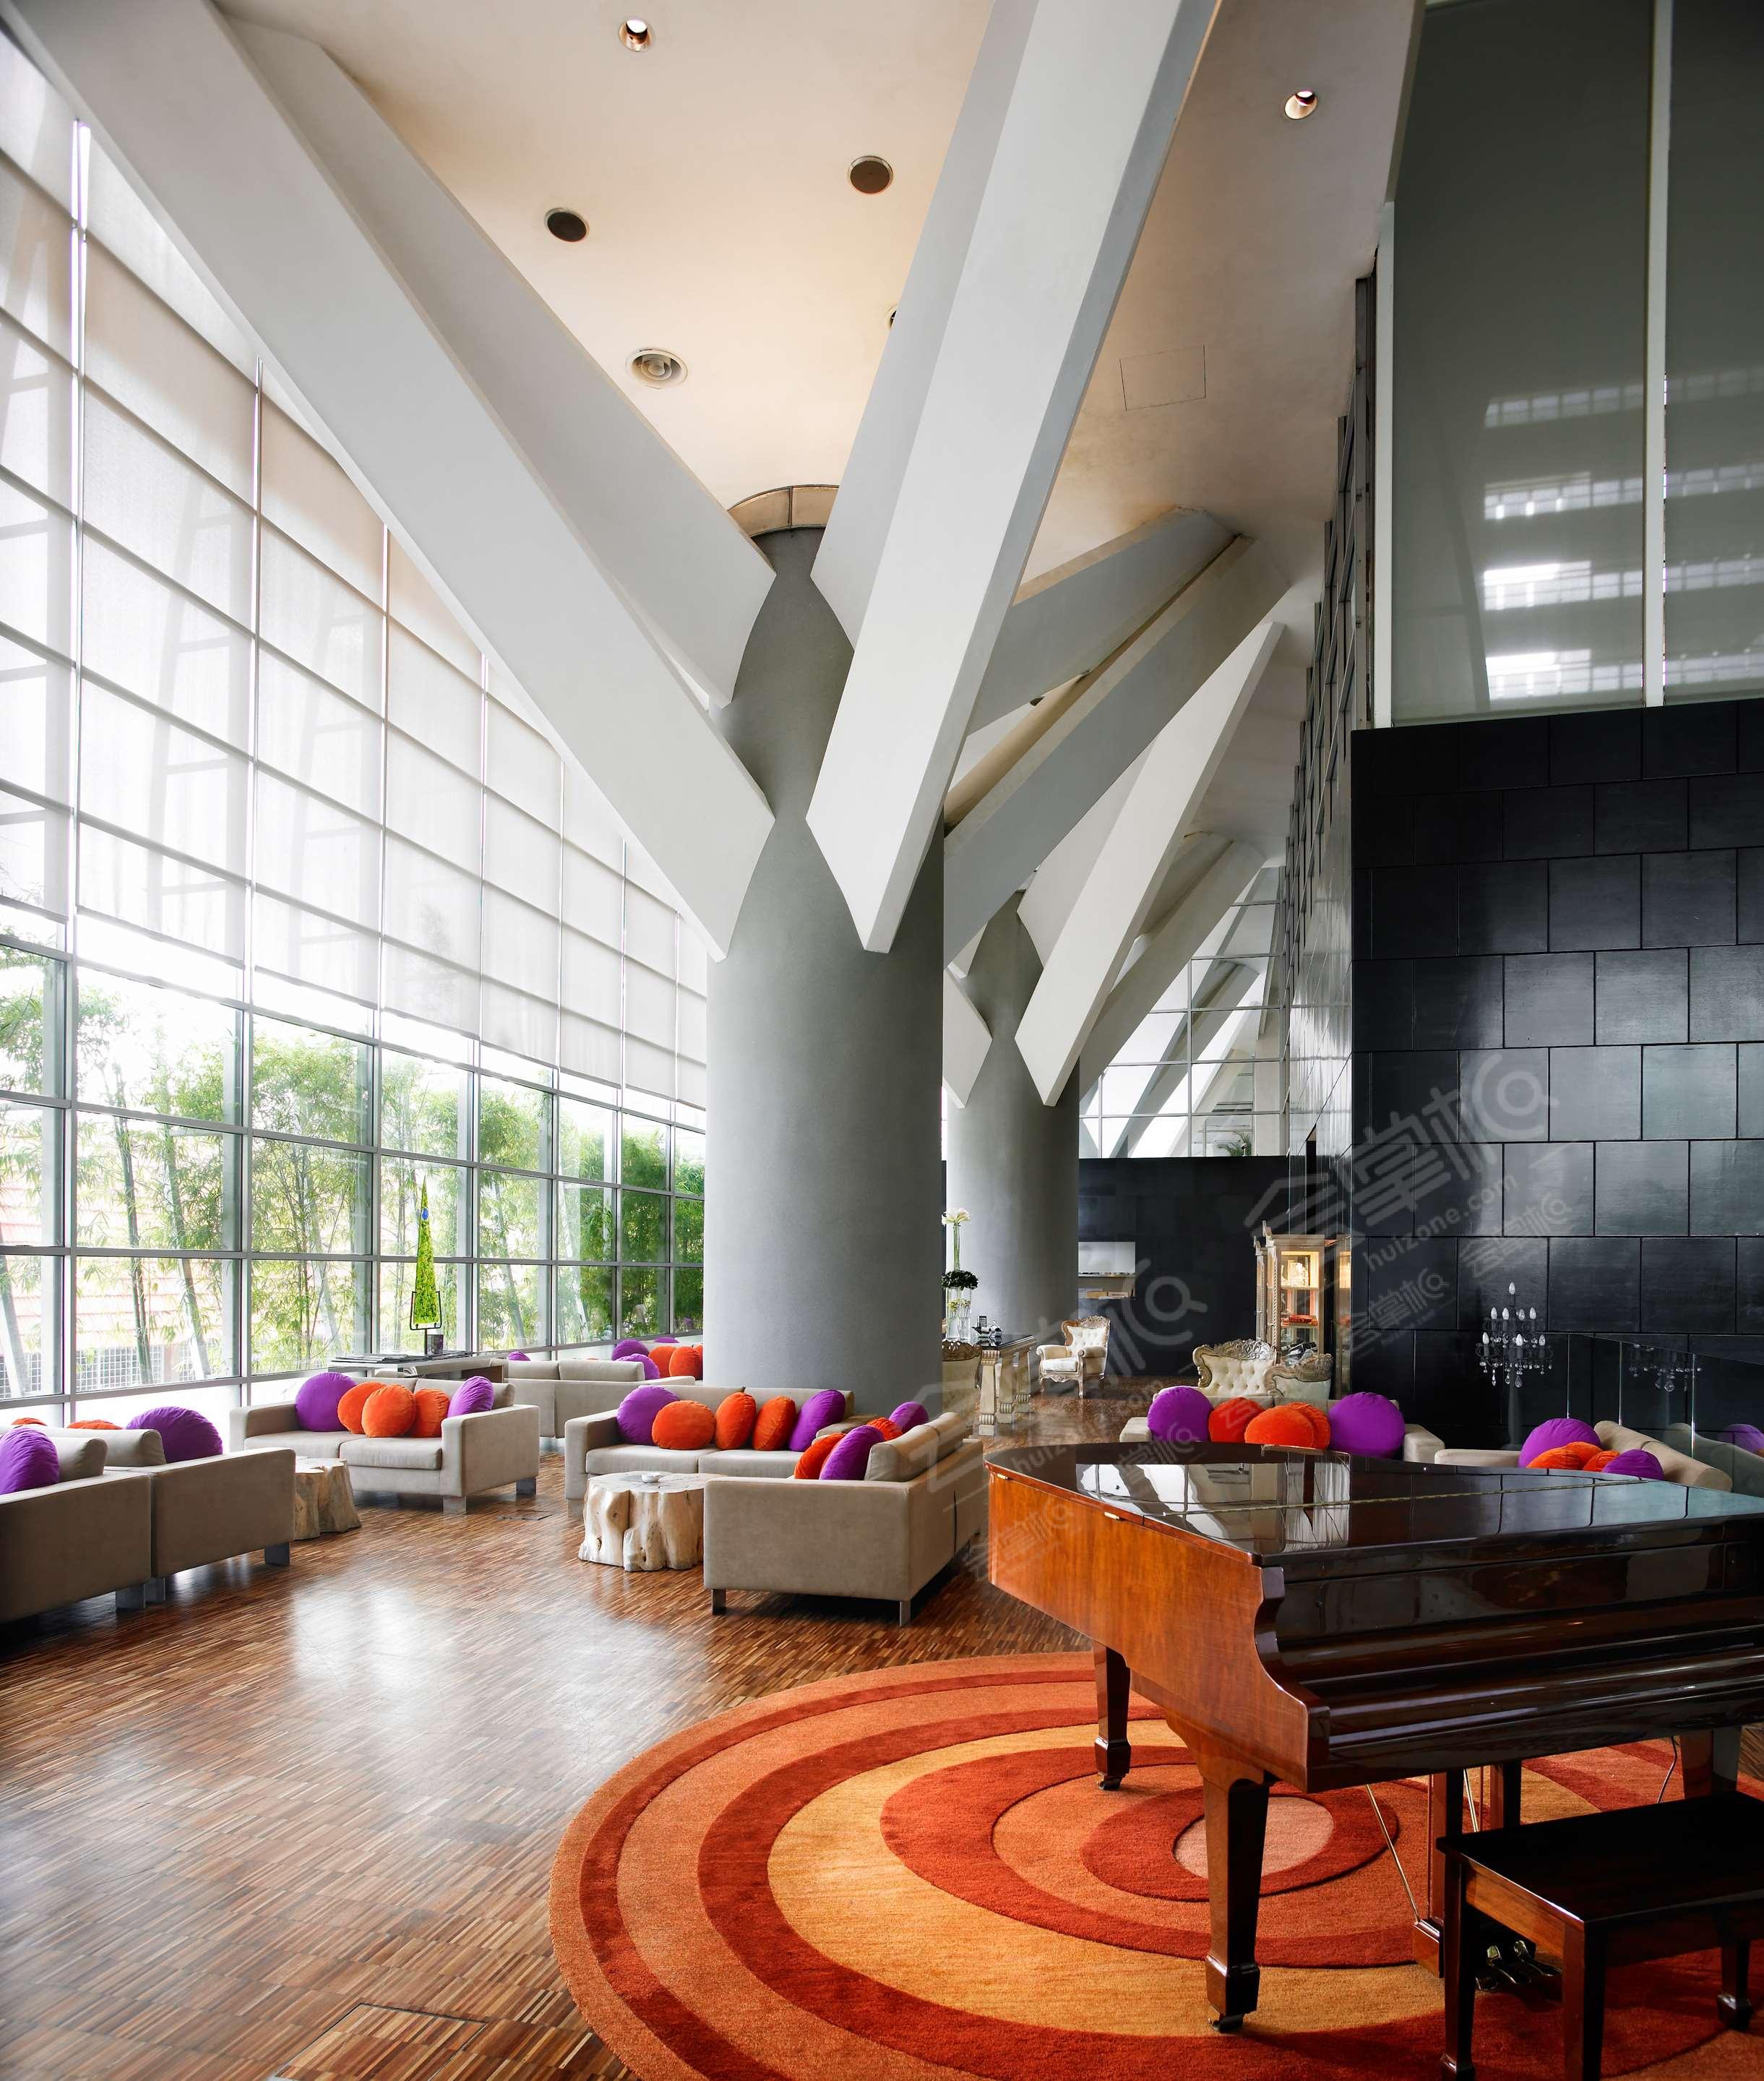 吉隆坡玛雅酒店(Hotel